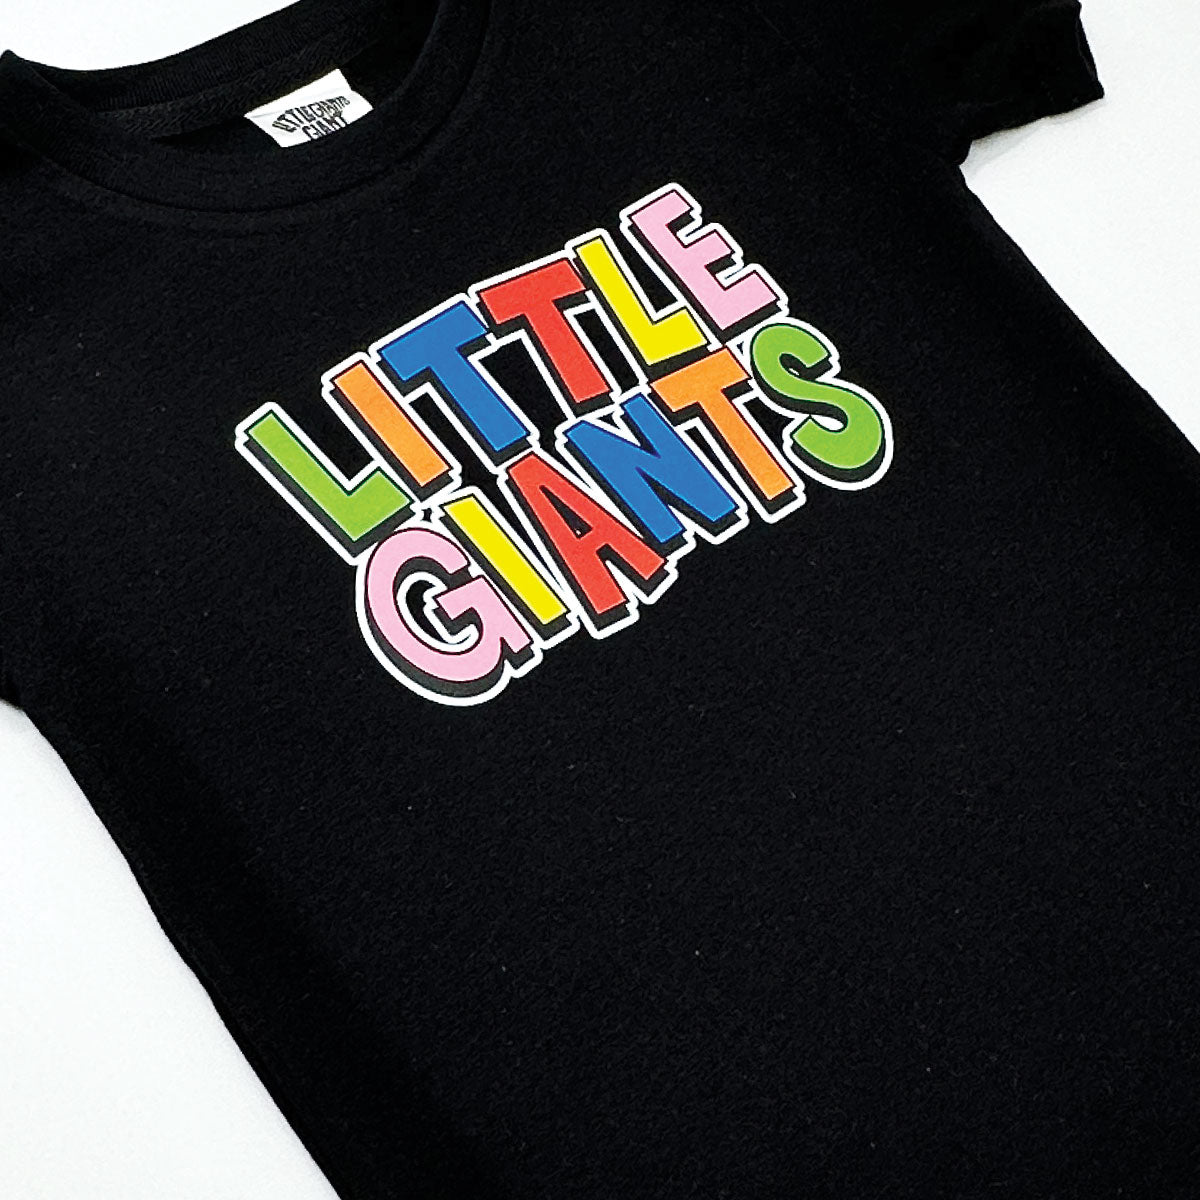 PEACE Little Giants T-shirt (Black)